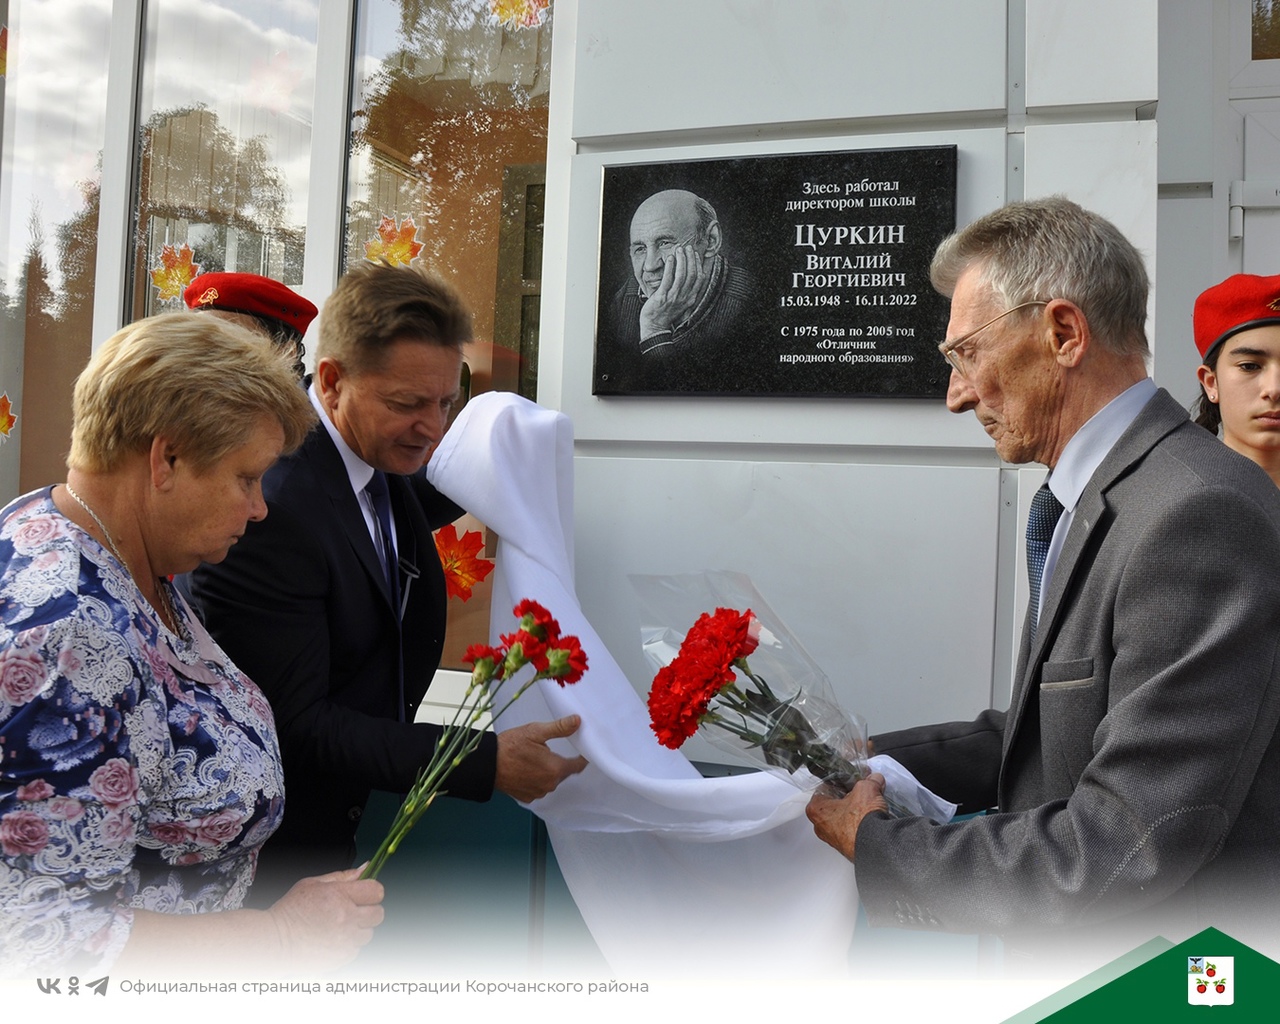 В Новослободской школе открыли мемориальную доску в честь Виталия Цуркина.